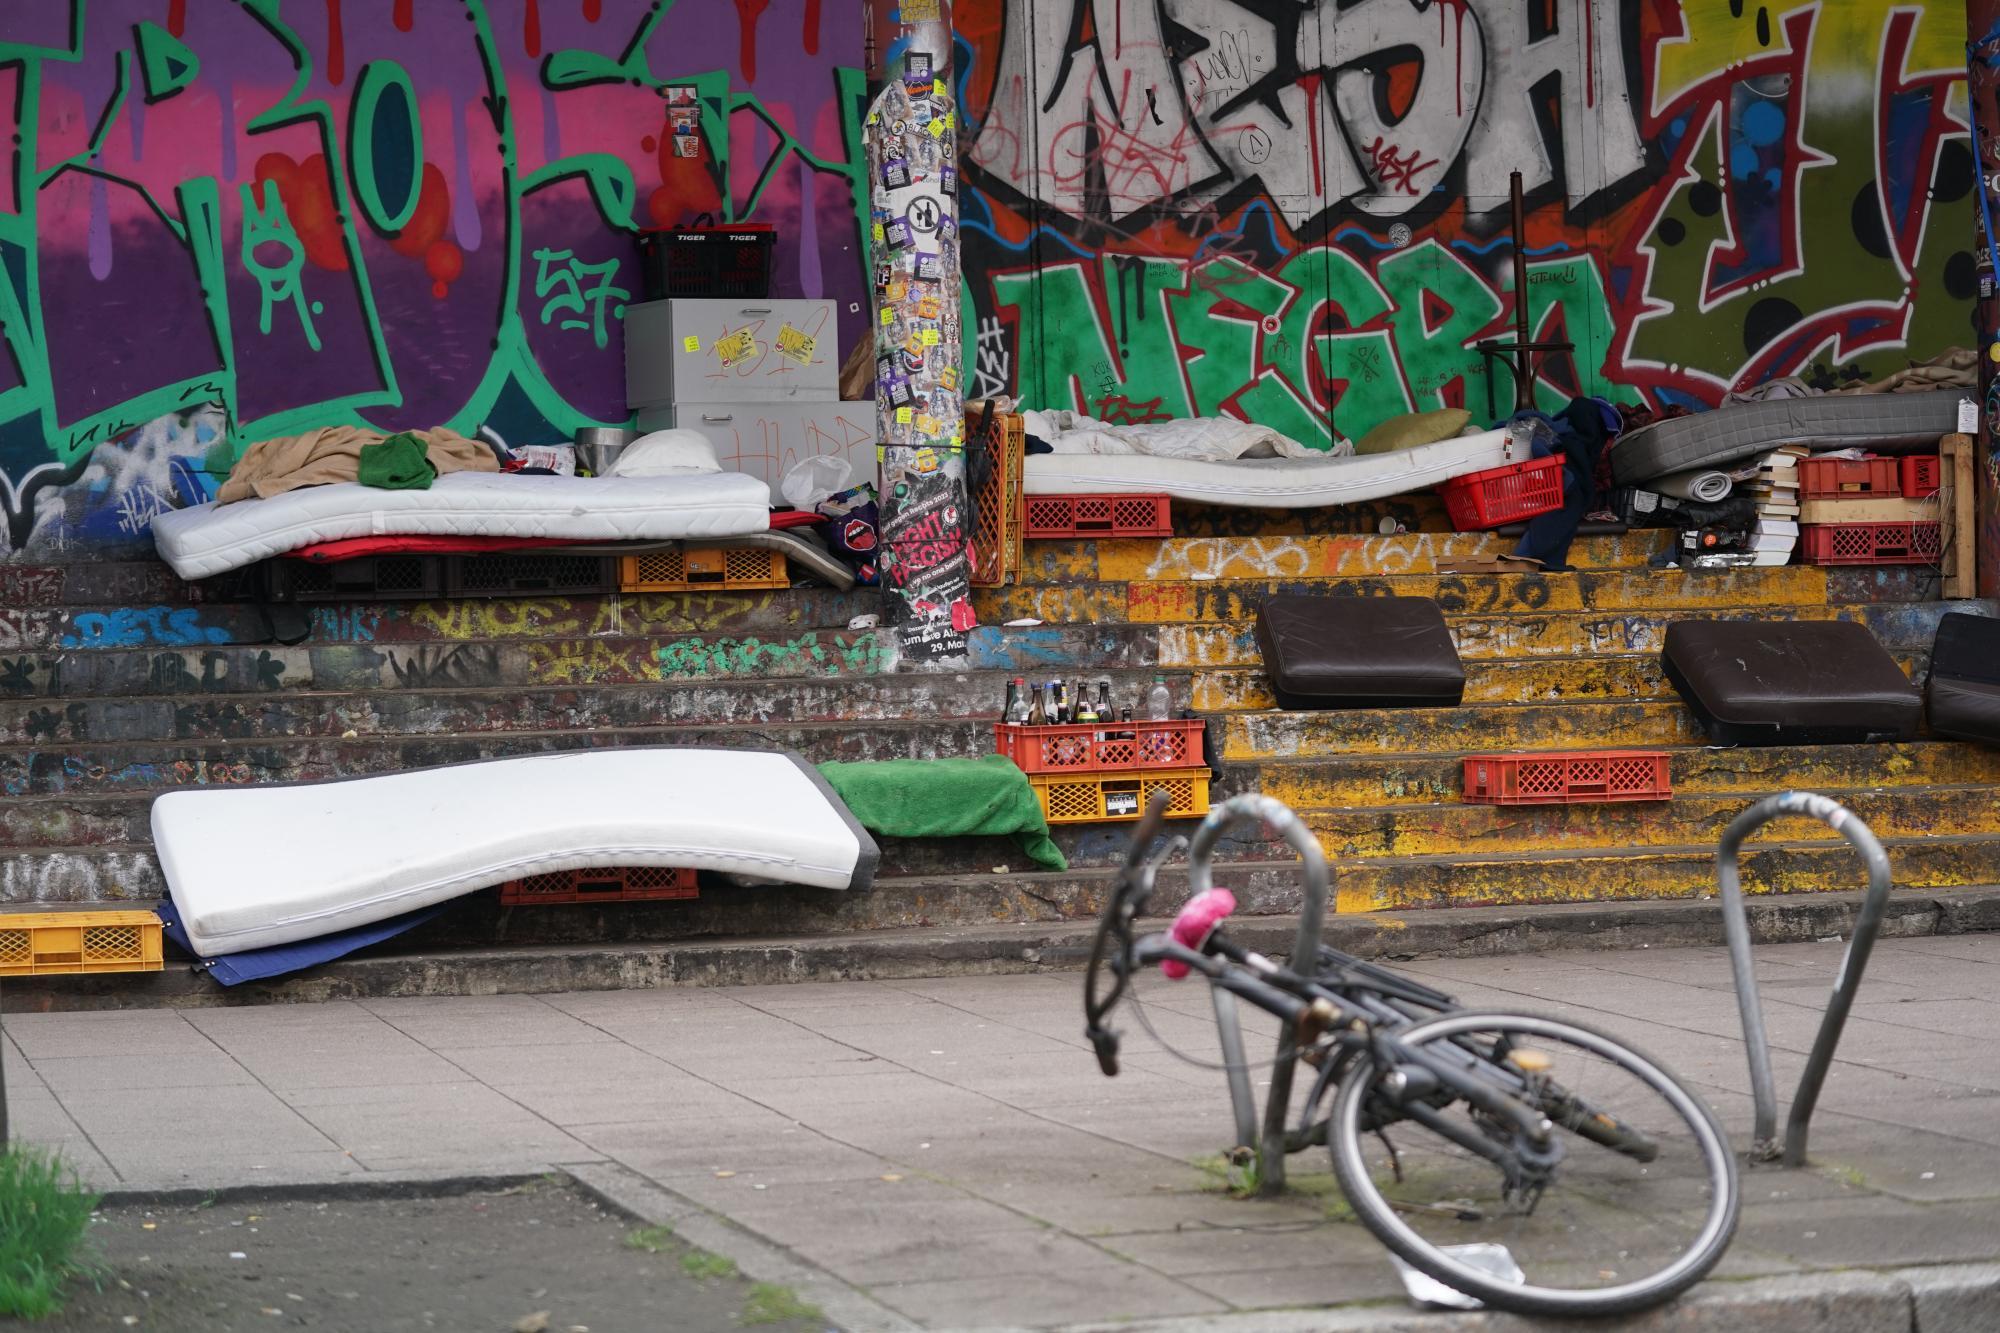 Mehr Obdachlose in London: Aktivisten appellieren an Regierung